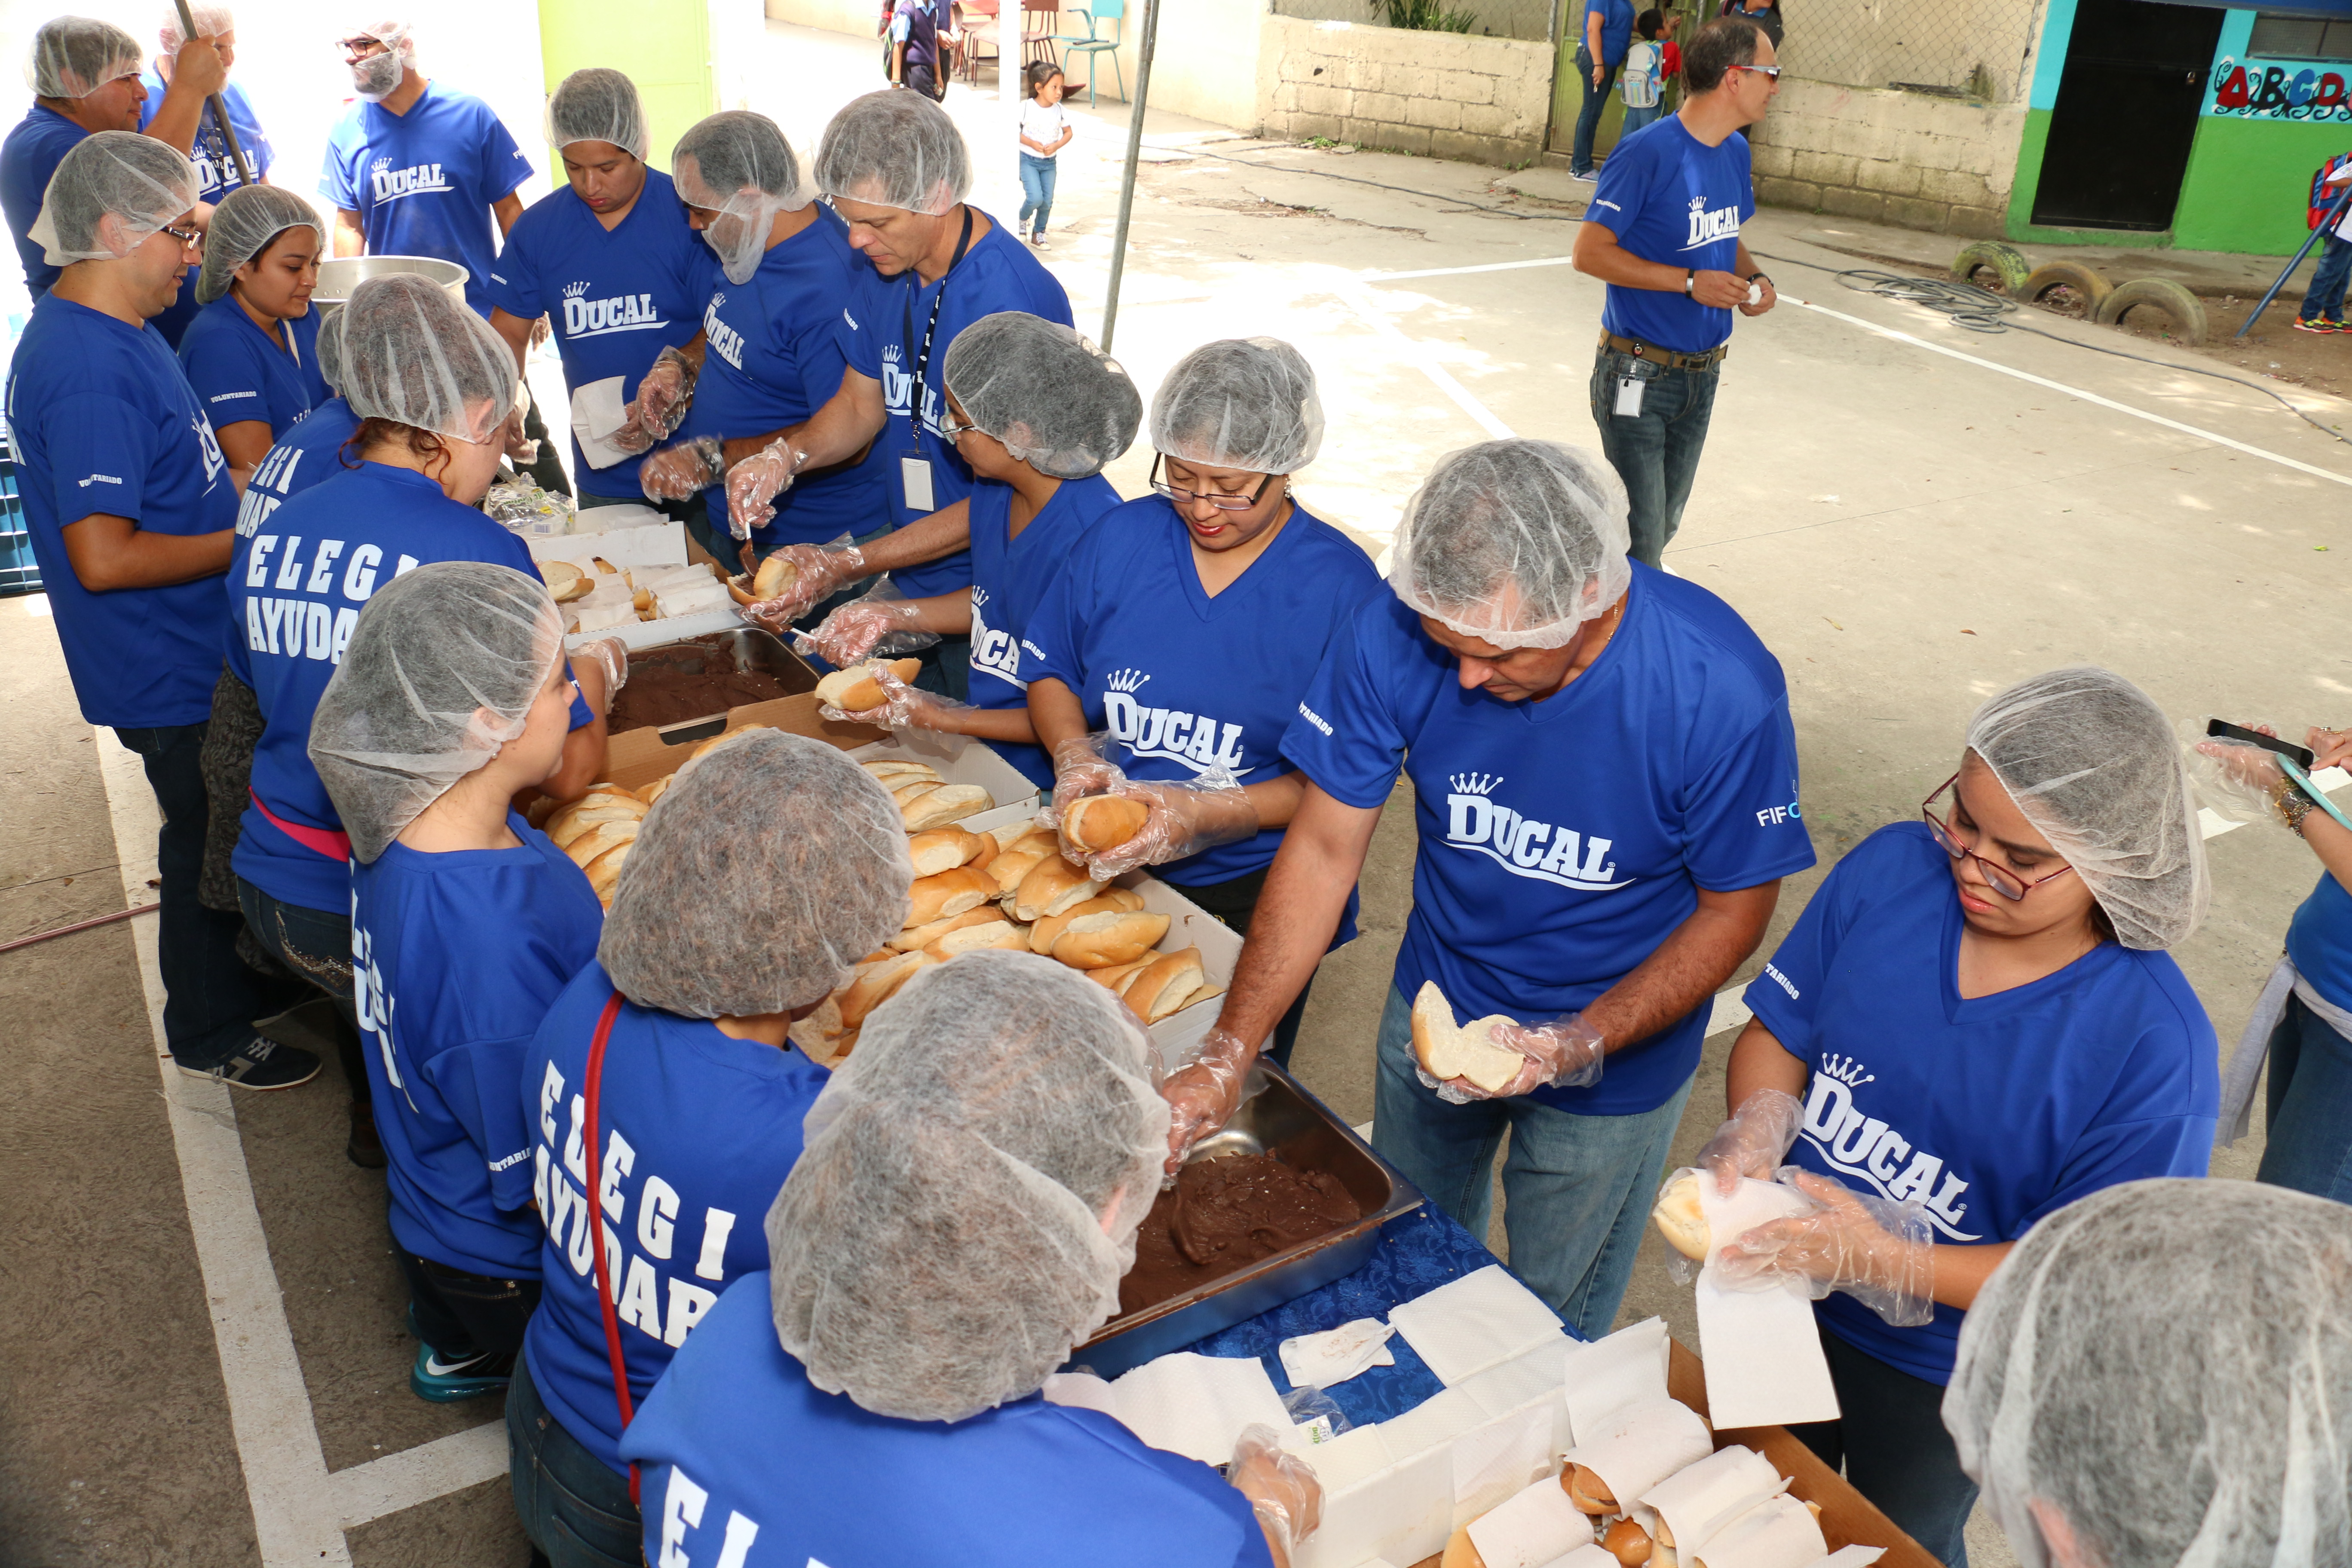 Industrias Alimenticias Kern´s presenta “Voluntariado con Propósito”